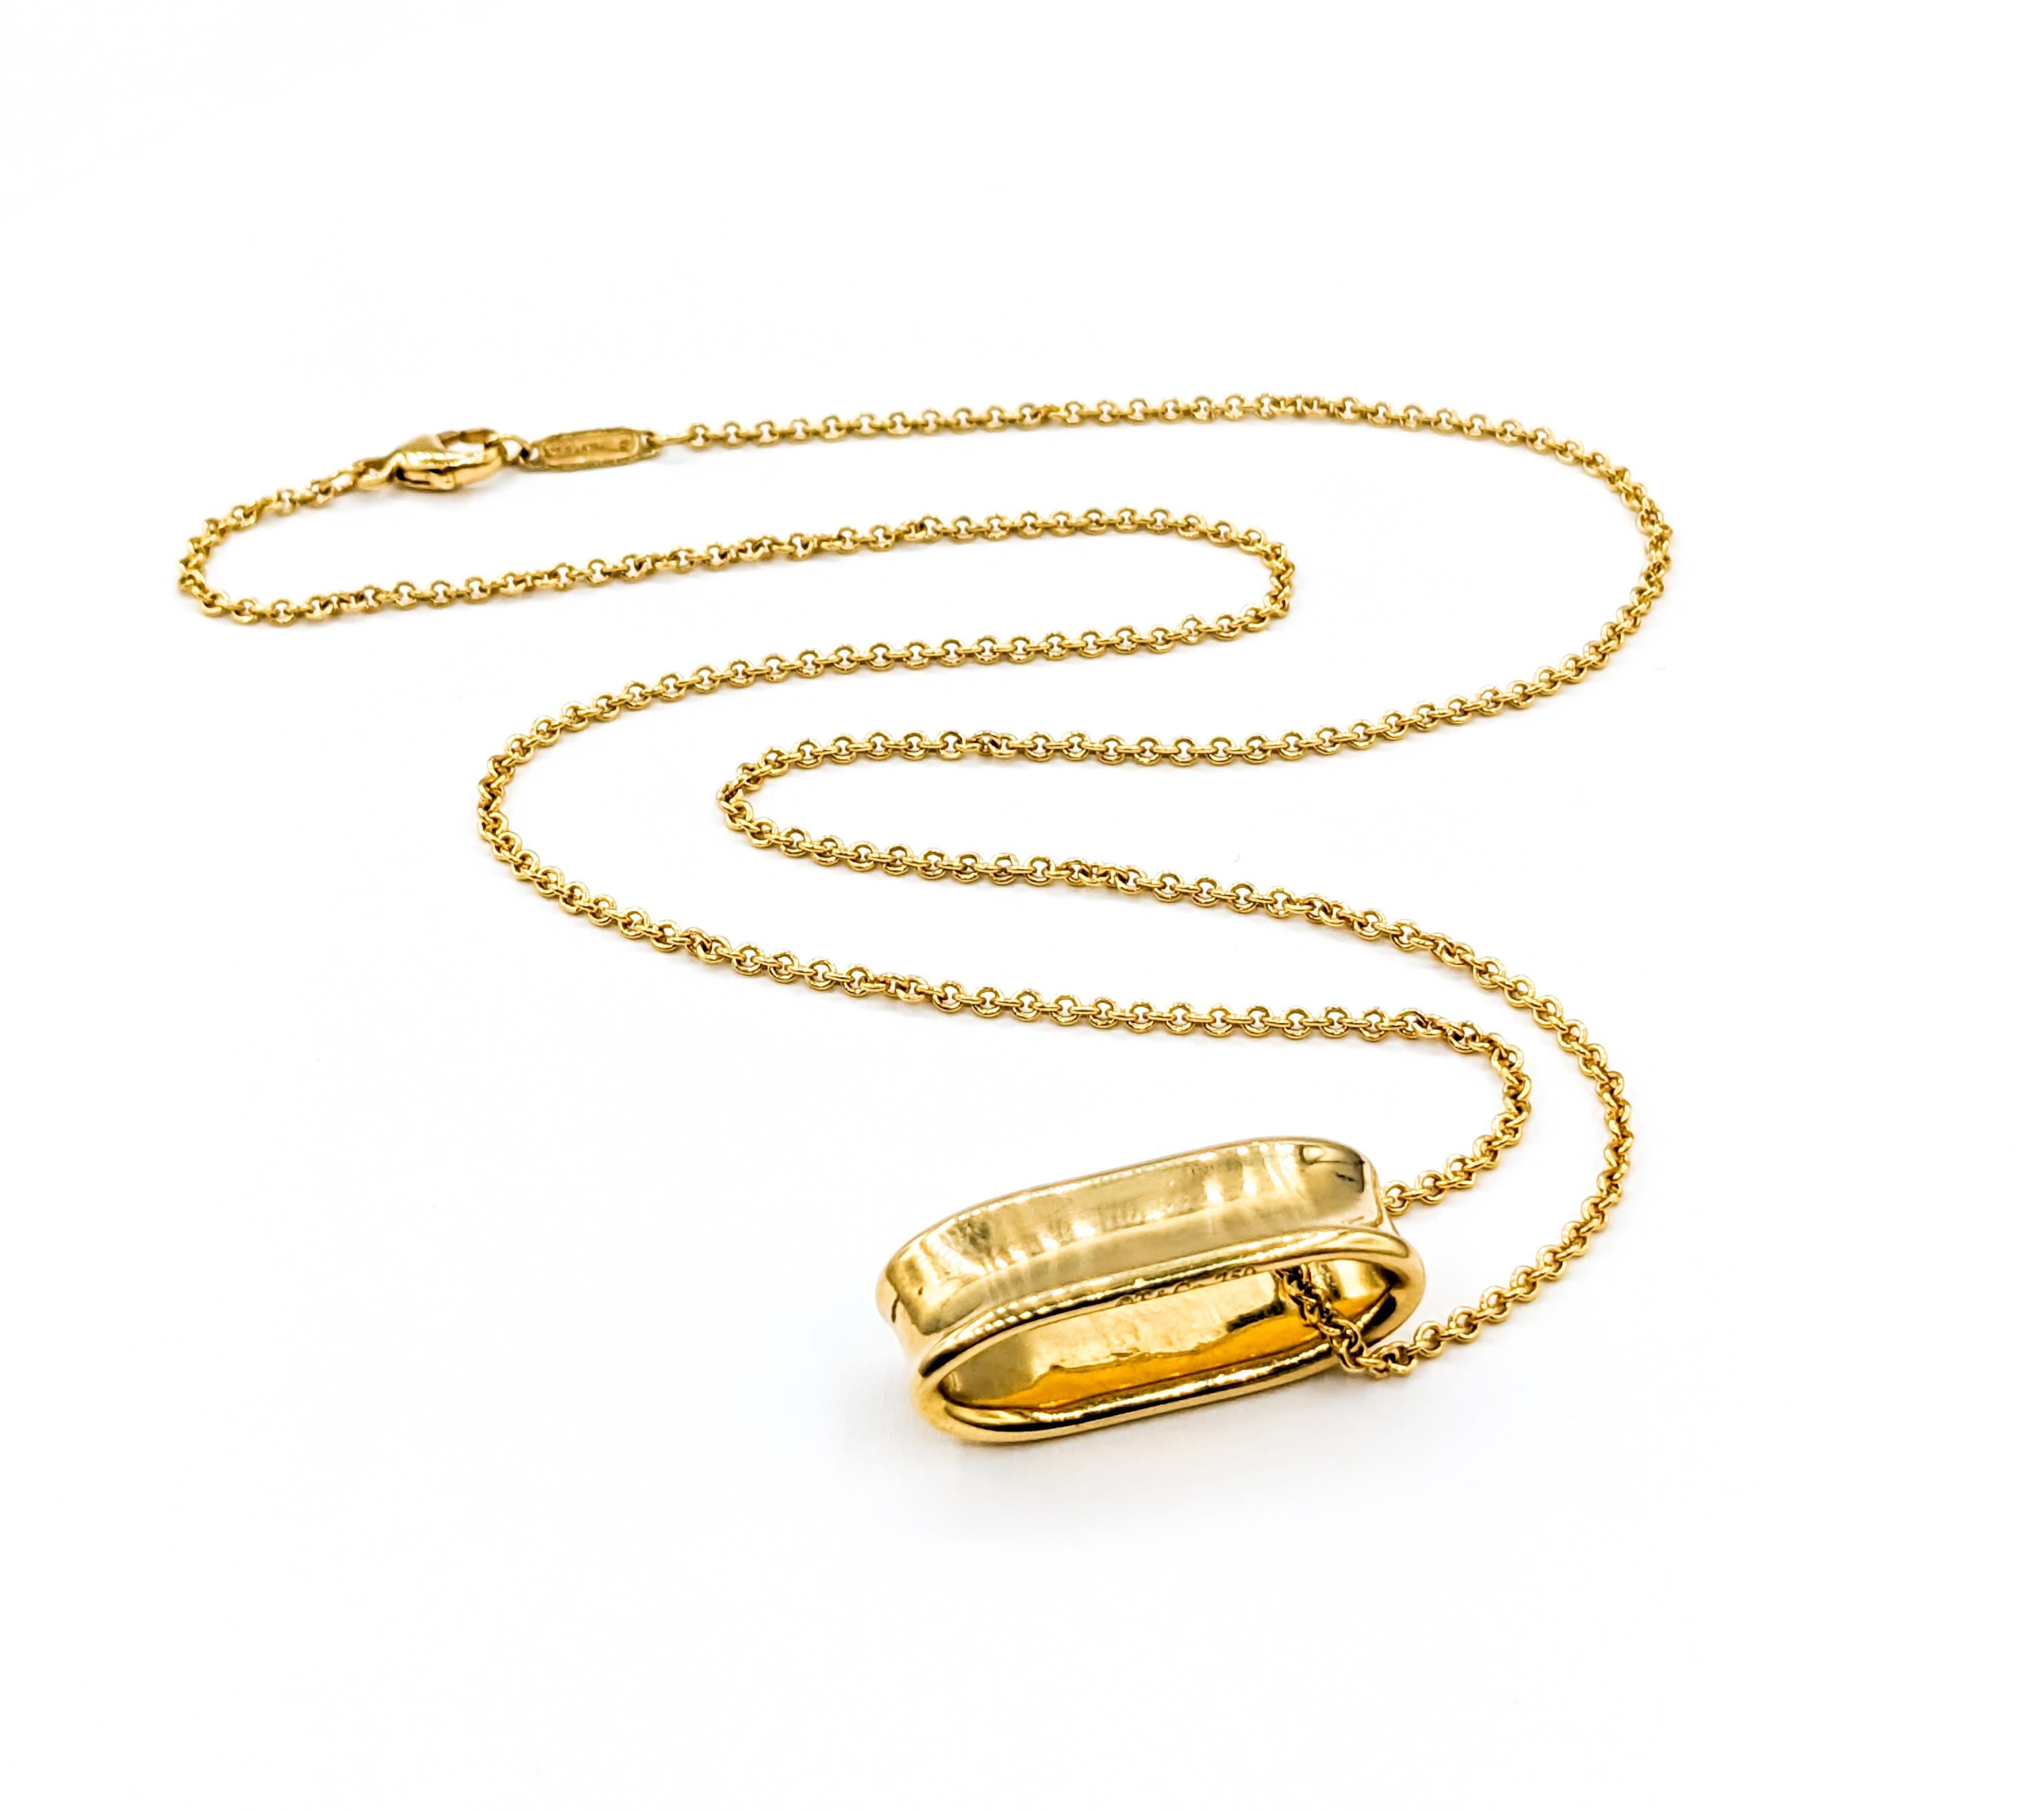 Élégant Tiffany & Co. Pendentif Looping 1837 en or jaune 18kt

Découvrez l'emblème de l'élégance et de l'artisanat intemporel avec ce pendentif exquis, forgé dans l'éclat luxueux de l'or jaune 18ky. Cette pièce est une fière représentation de la